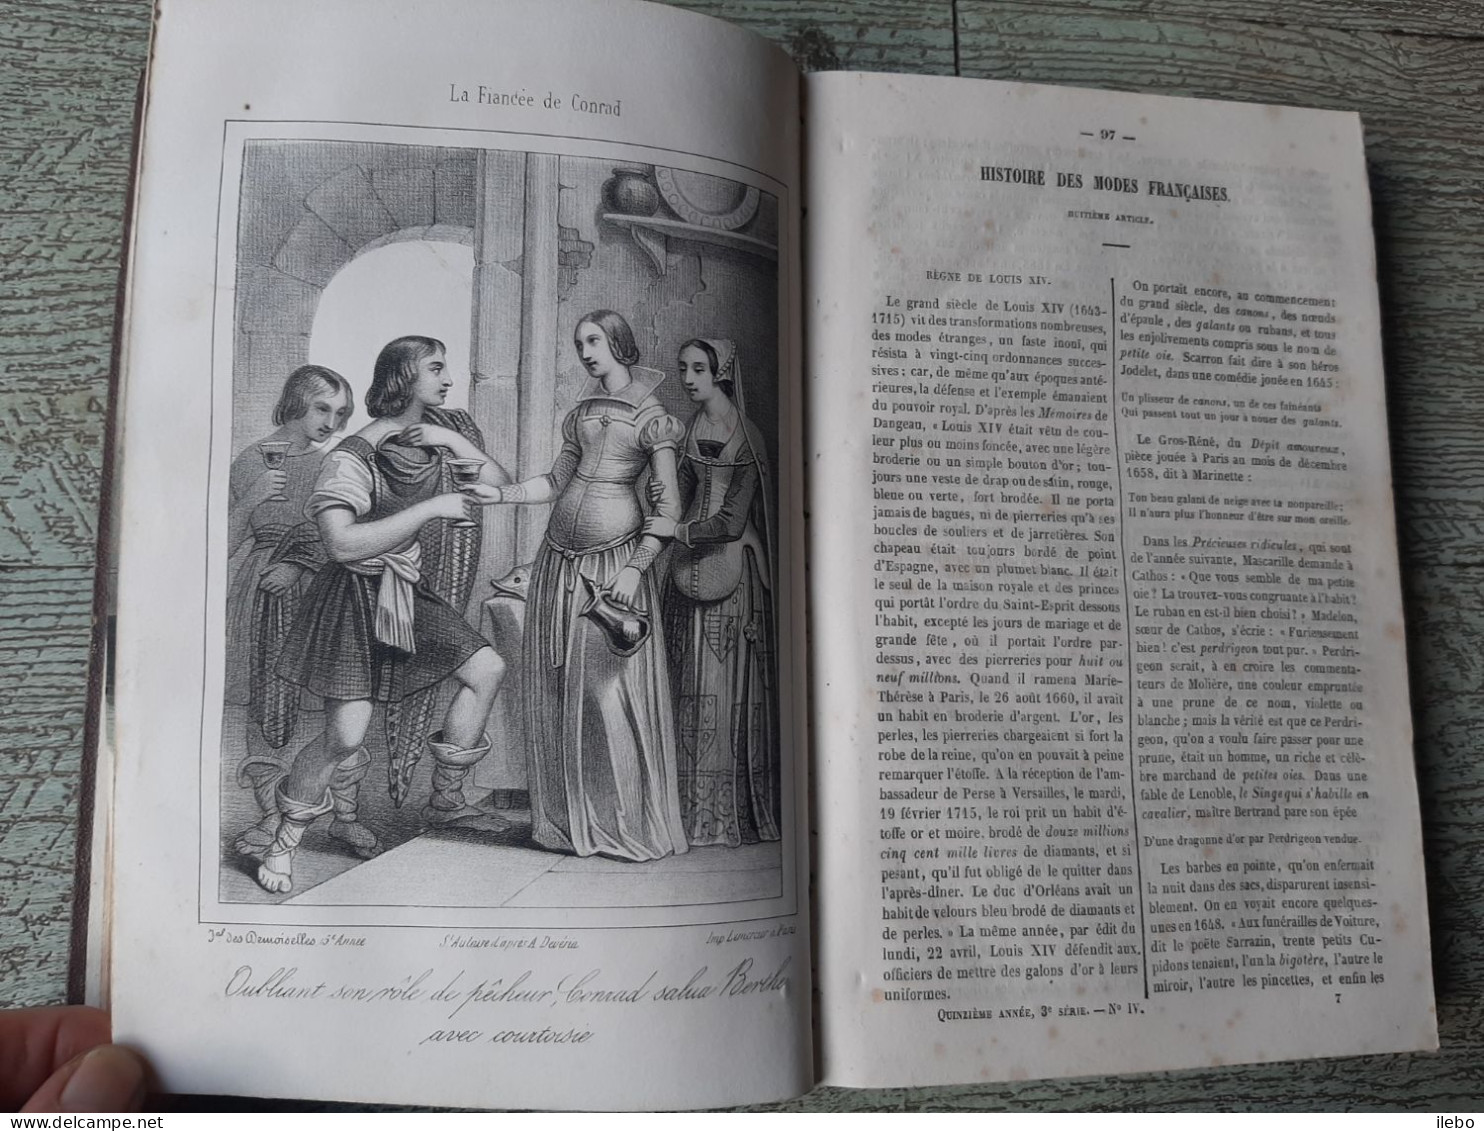 journal des demoiselles 1847 12 gravures de mode romans